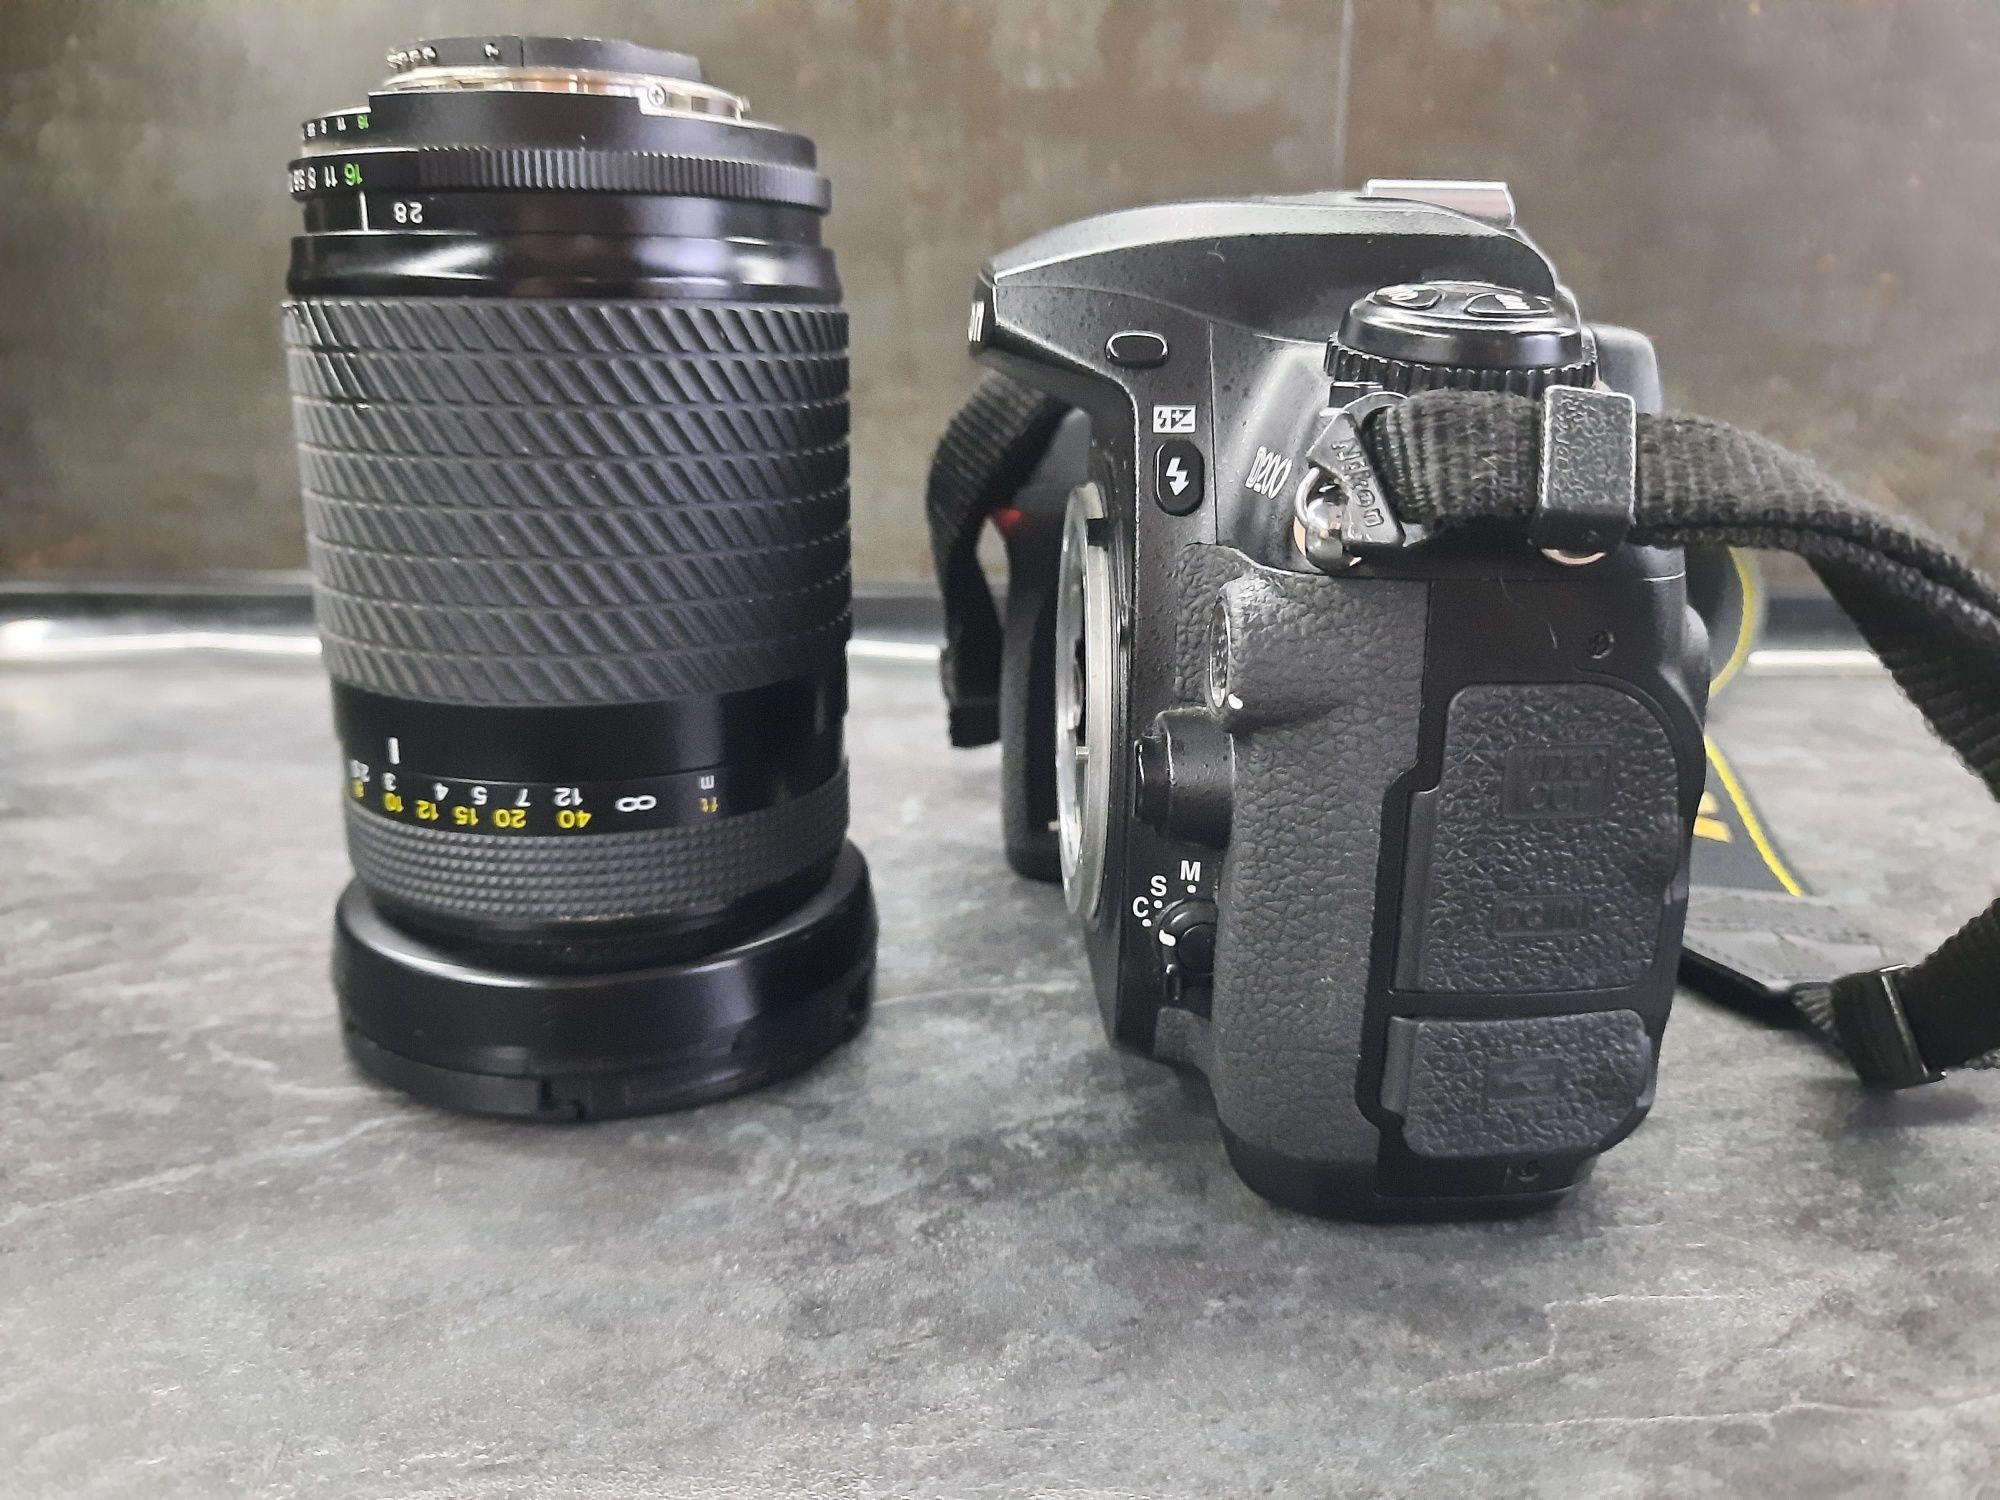 Nikon D200 +Tokina 28-210mm